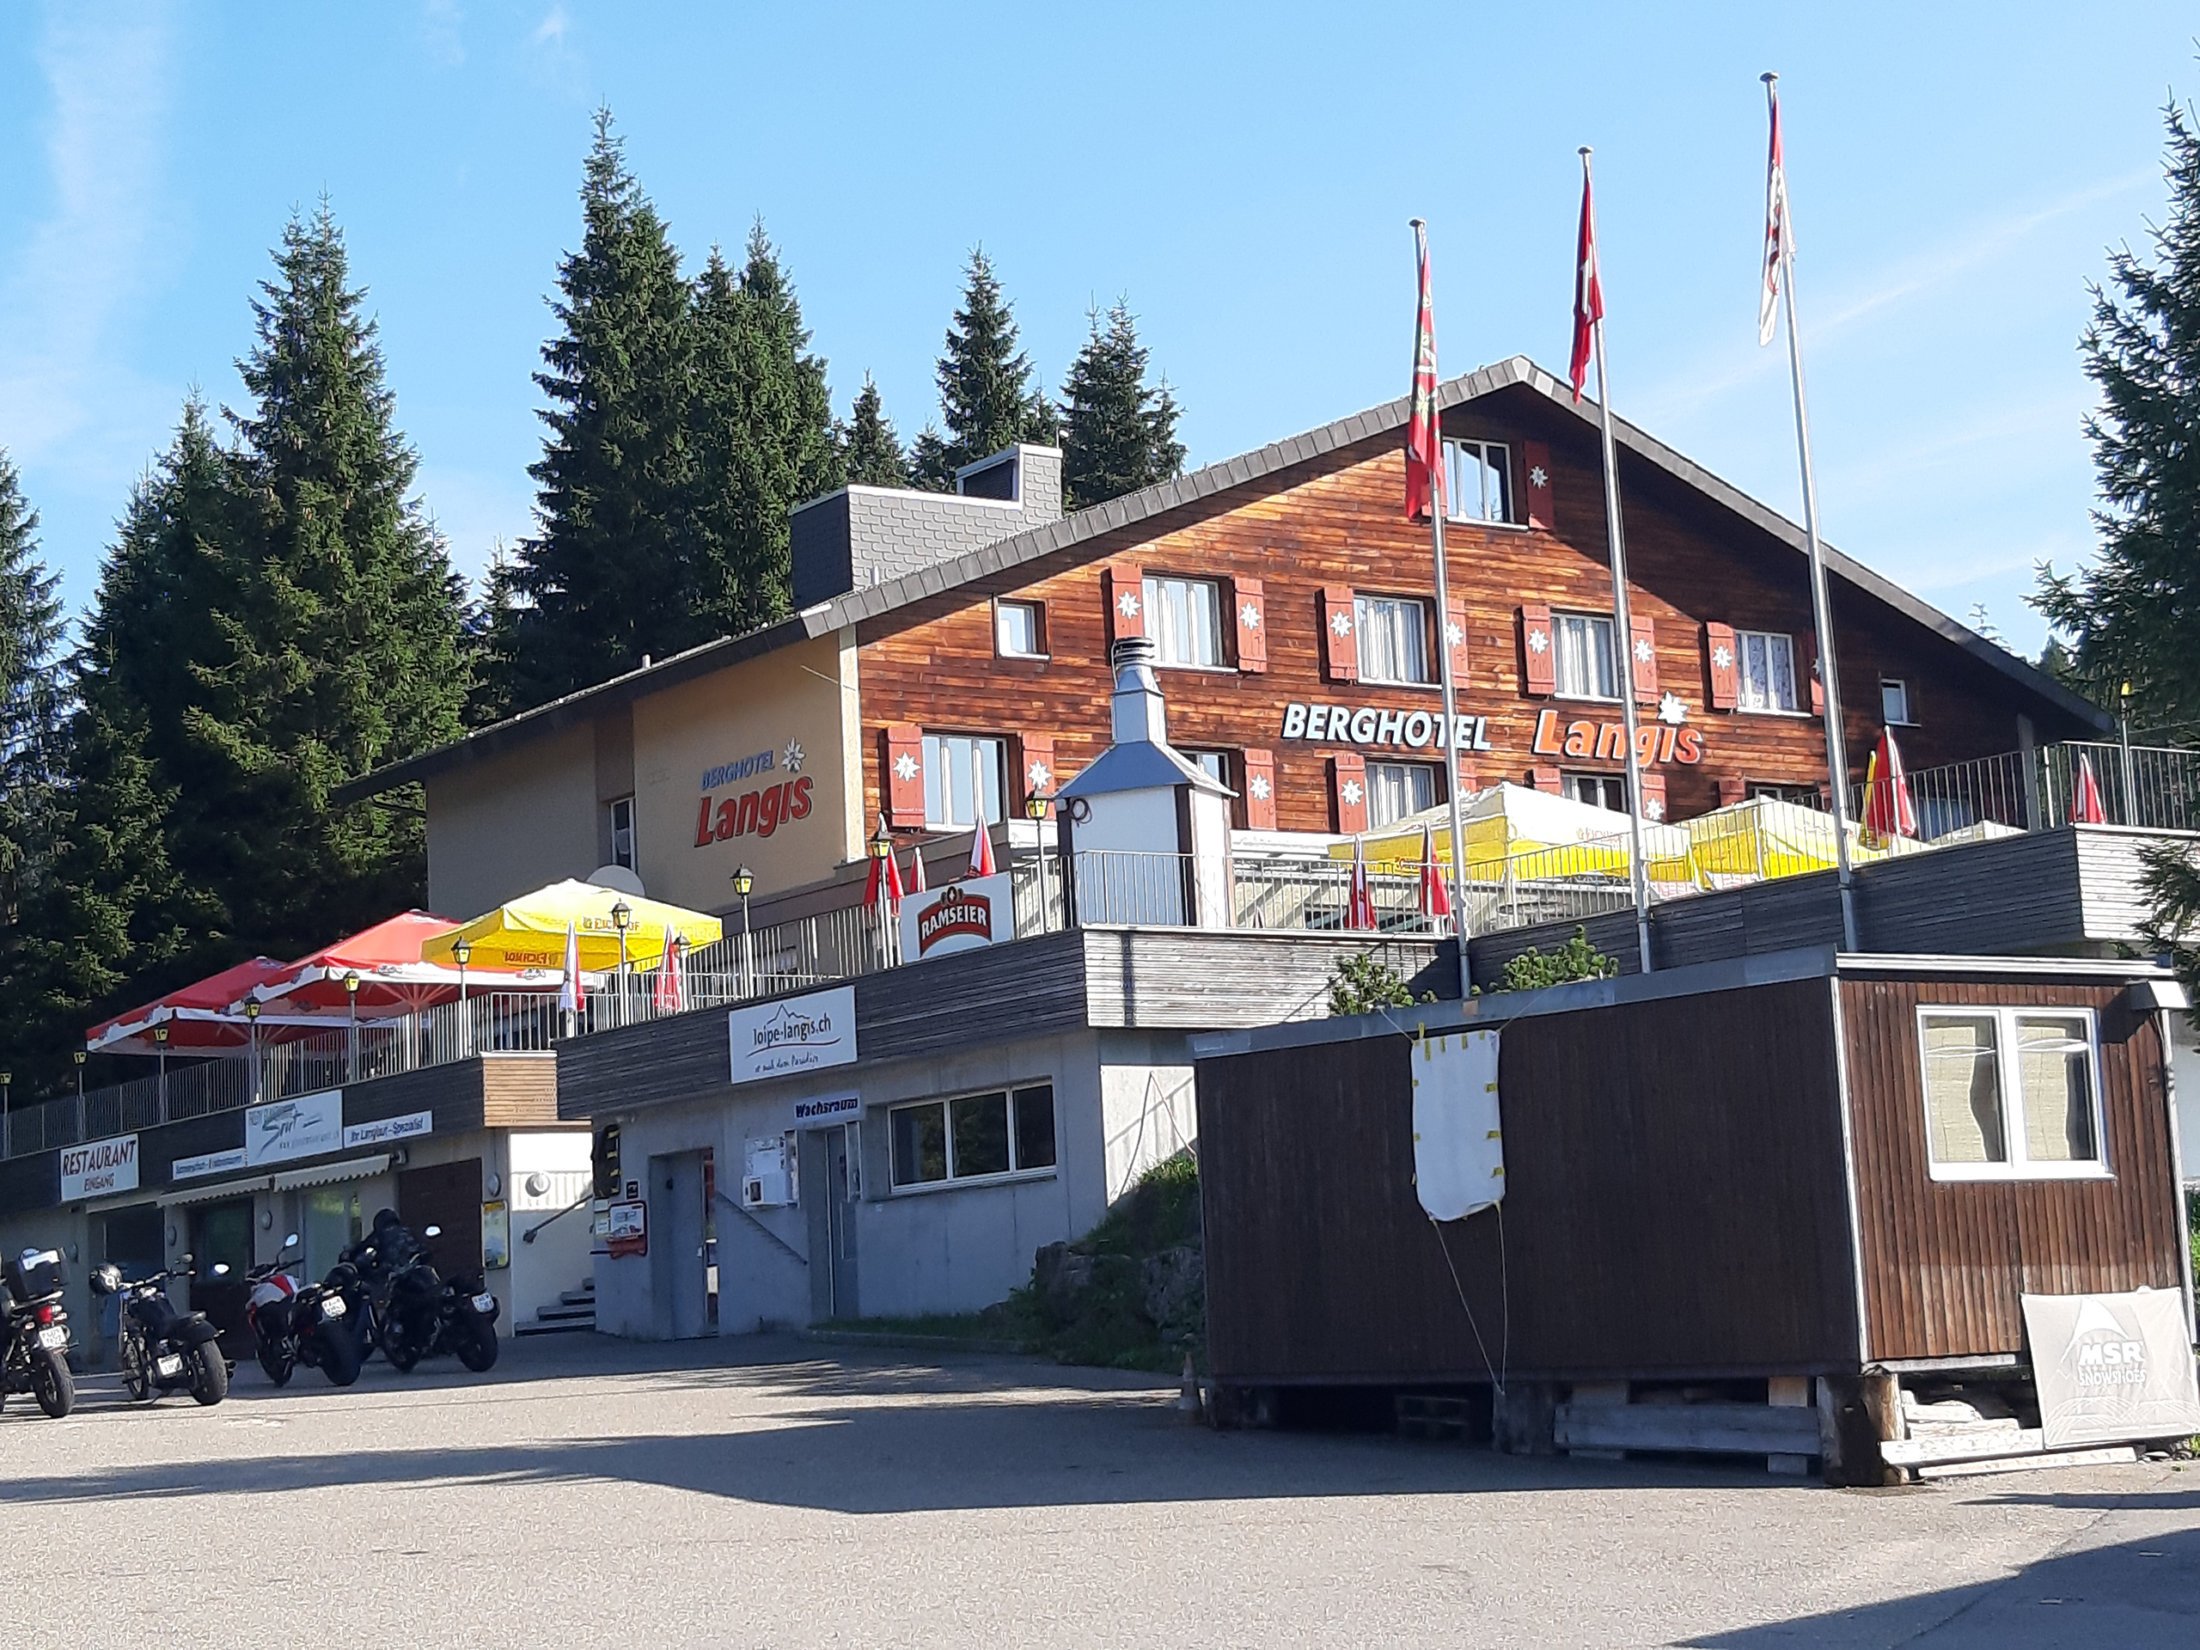 Berghotel Langis – Start und Ziel der Wanderung (EST)